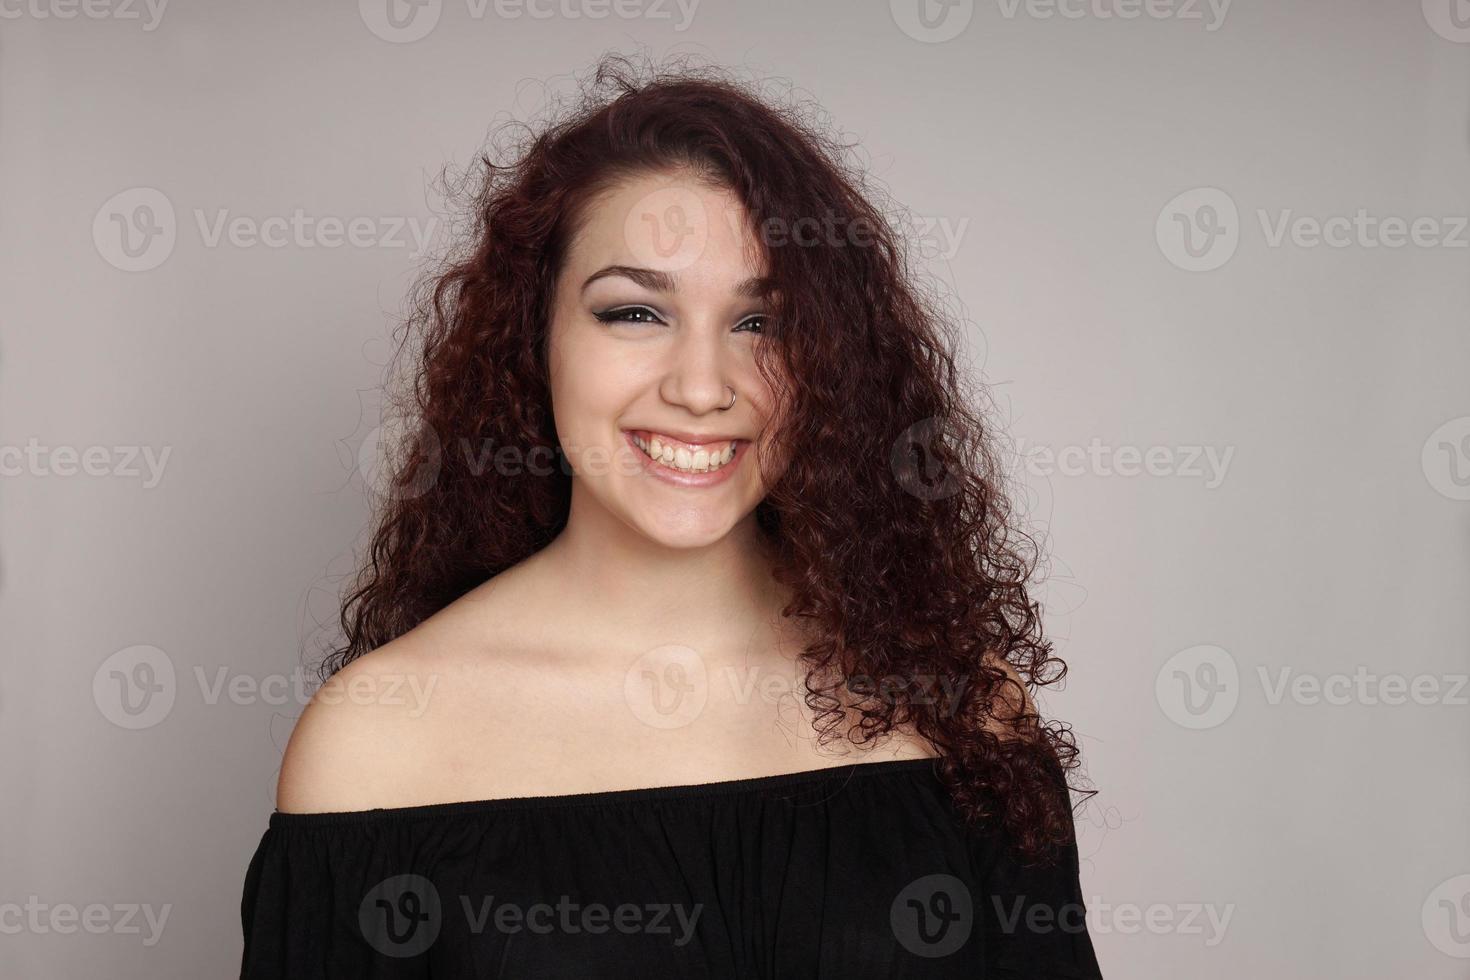 adolescente sonriente con el pelo rizado foto